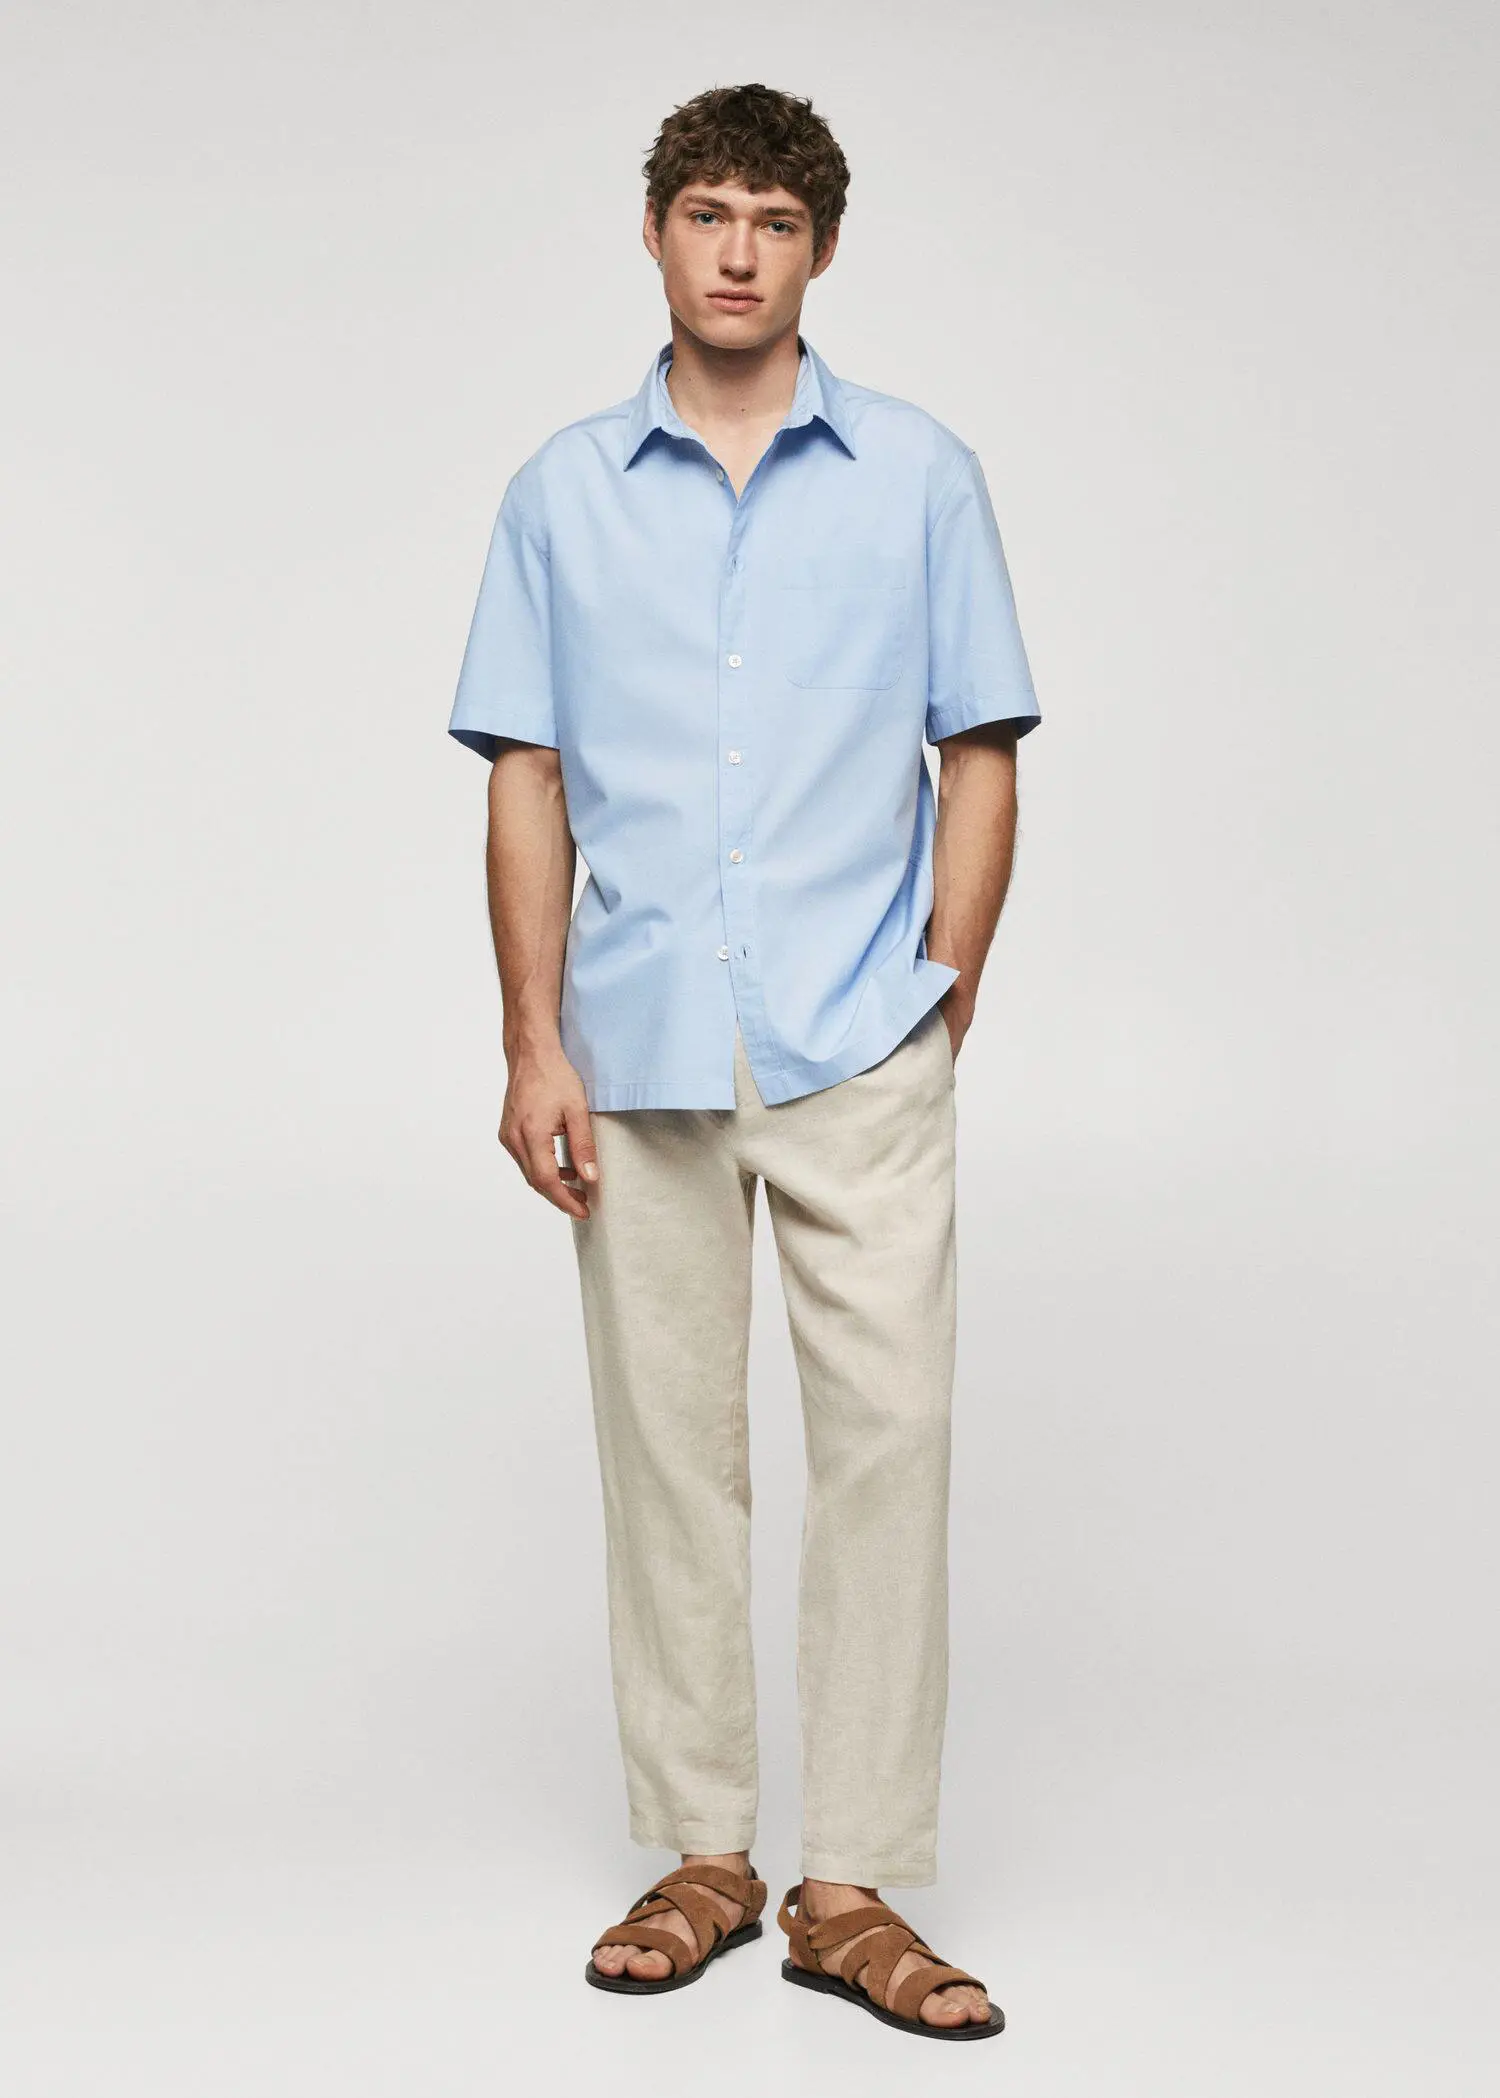 Mango Camisa regular-fit de algodão com manga curta. 2